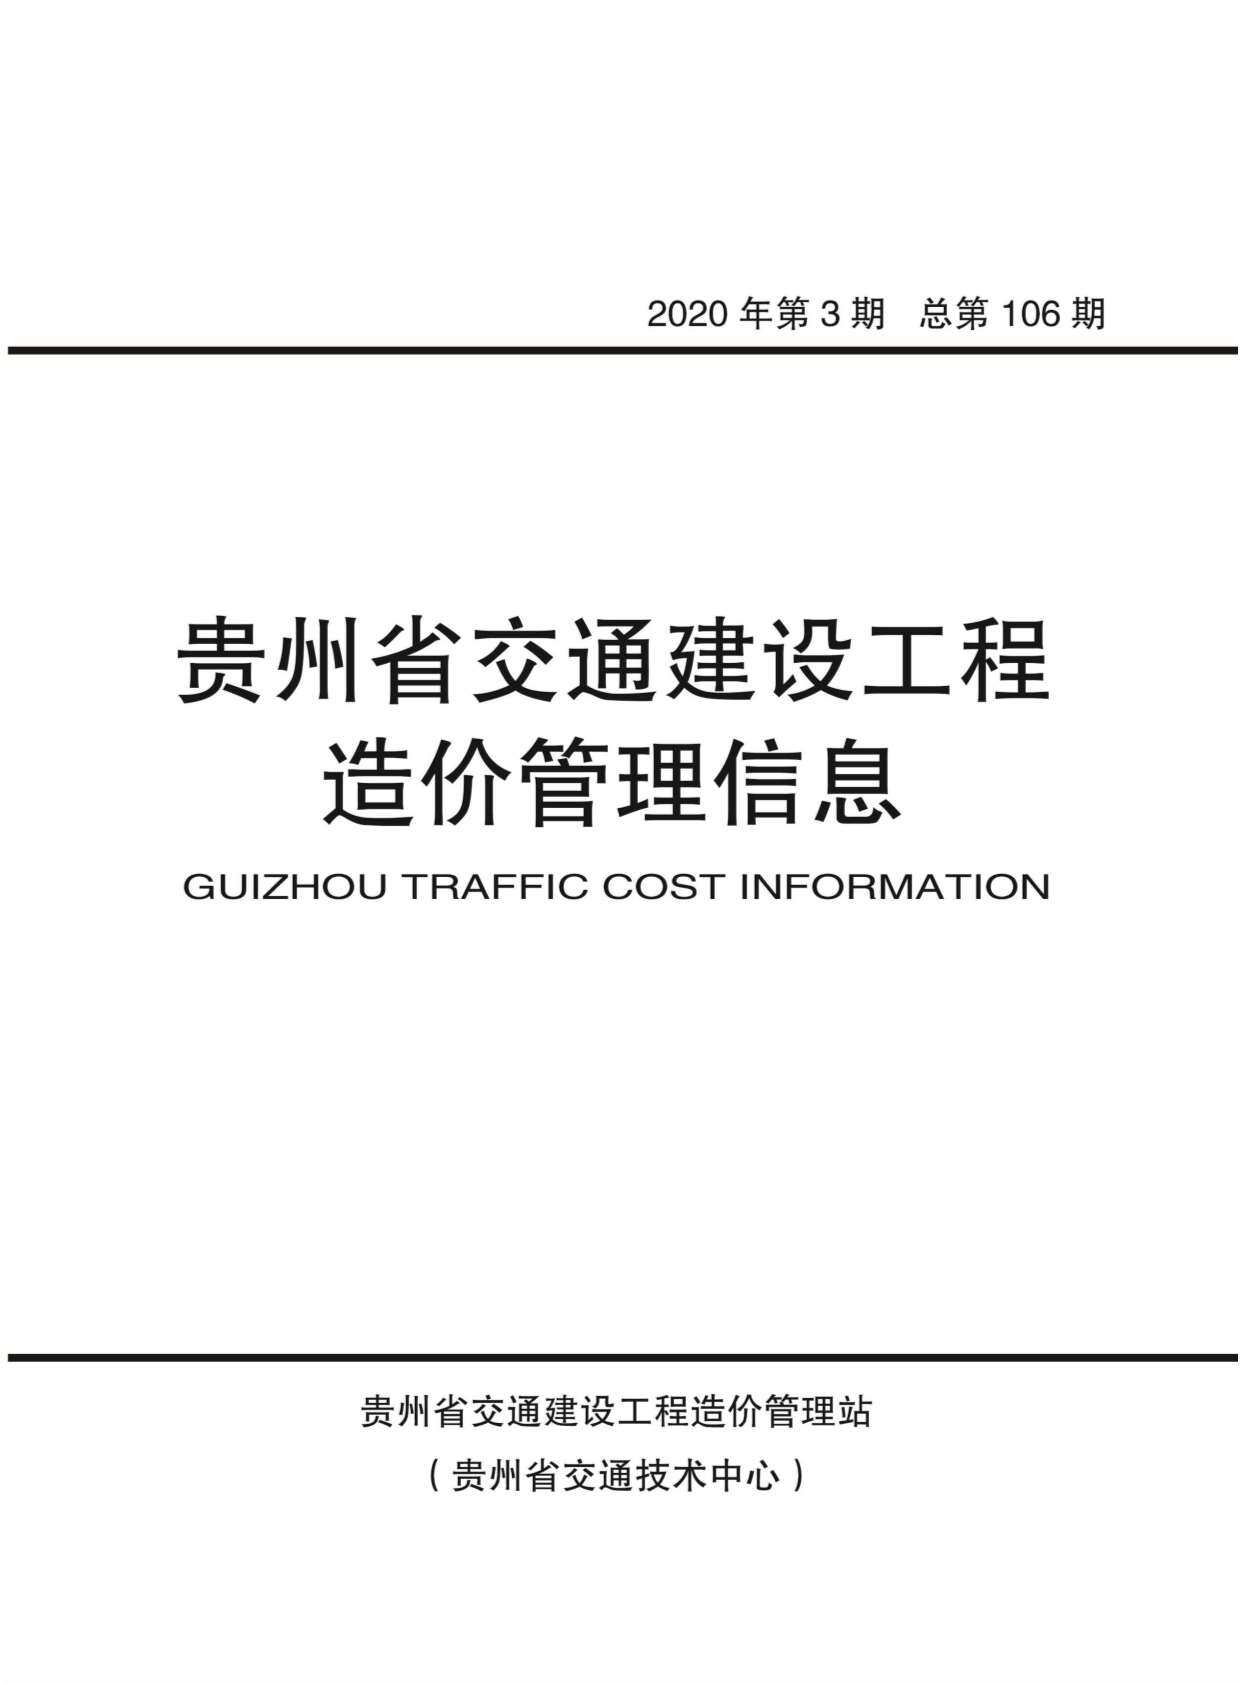 贵州省2020年3月造价信息造价信息期刊PDF扫描件